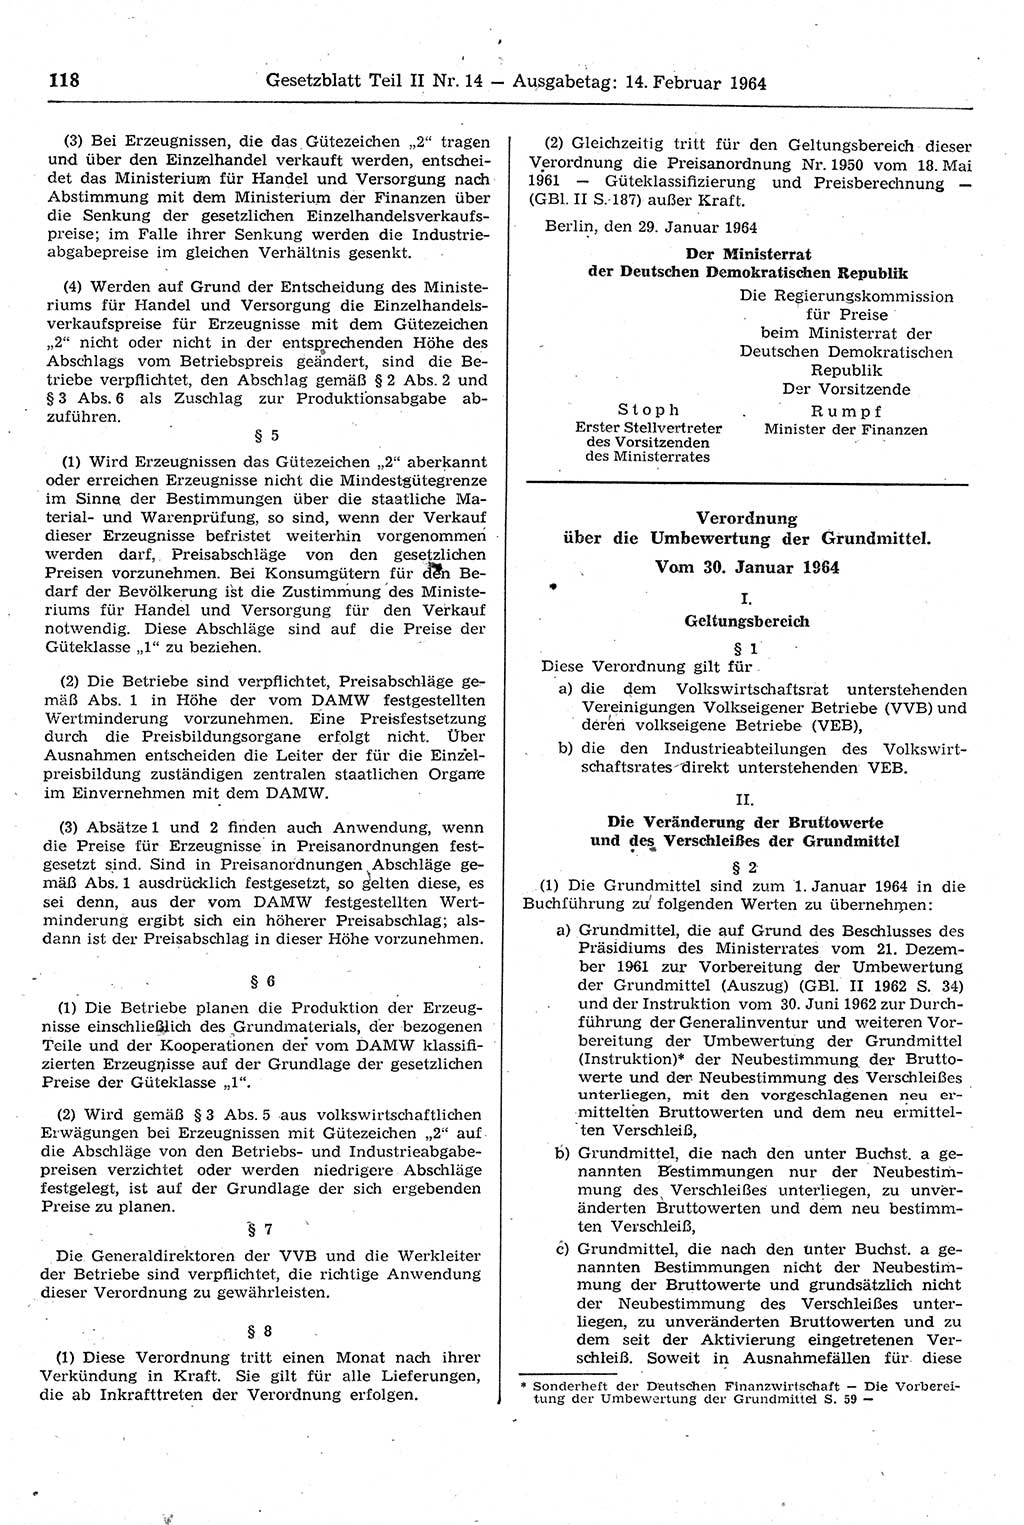 Gesetzblatt (GBl.) der Deutschen Demokratischen Republik (DDR) Teil ⅠⅠ 1964, Seite 118 (GBl. DDR ⅠⅠ 1964, S. 118)